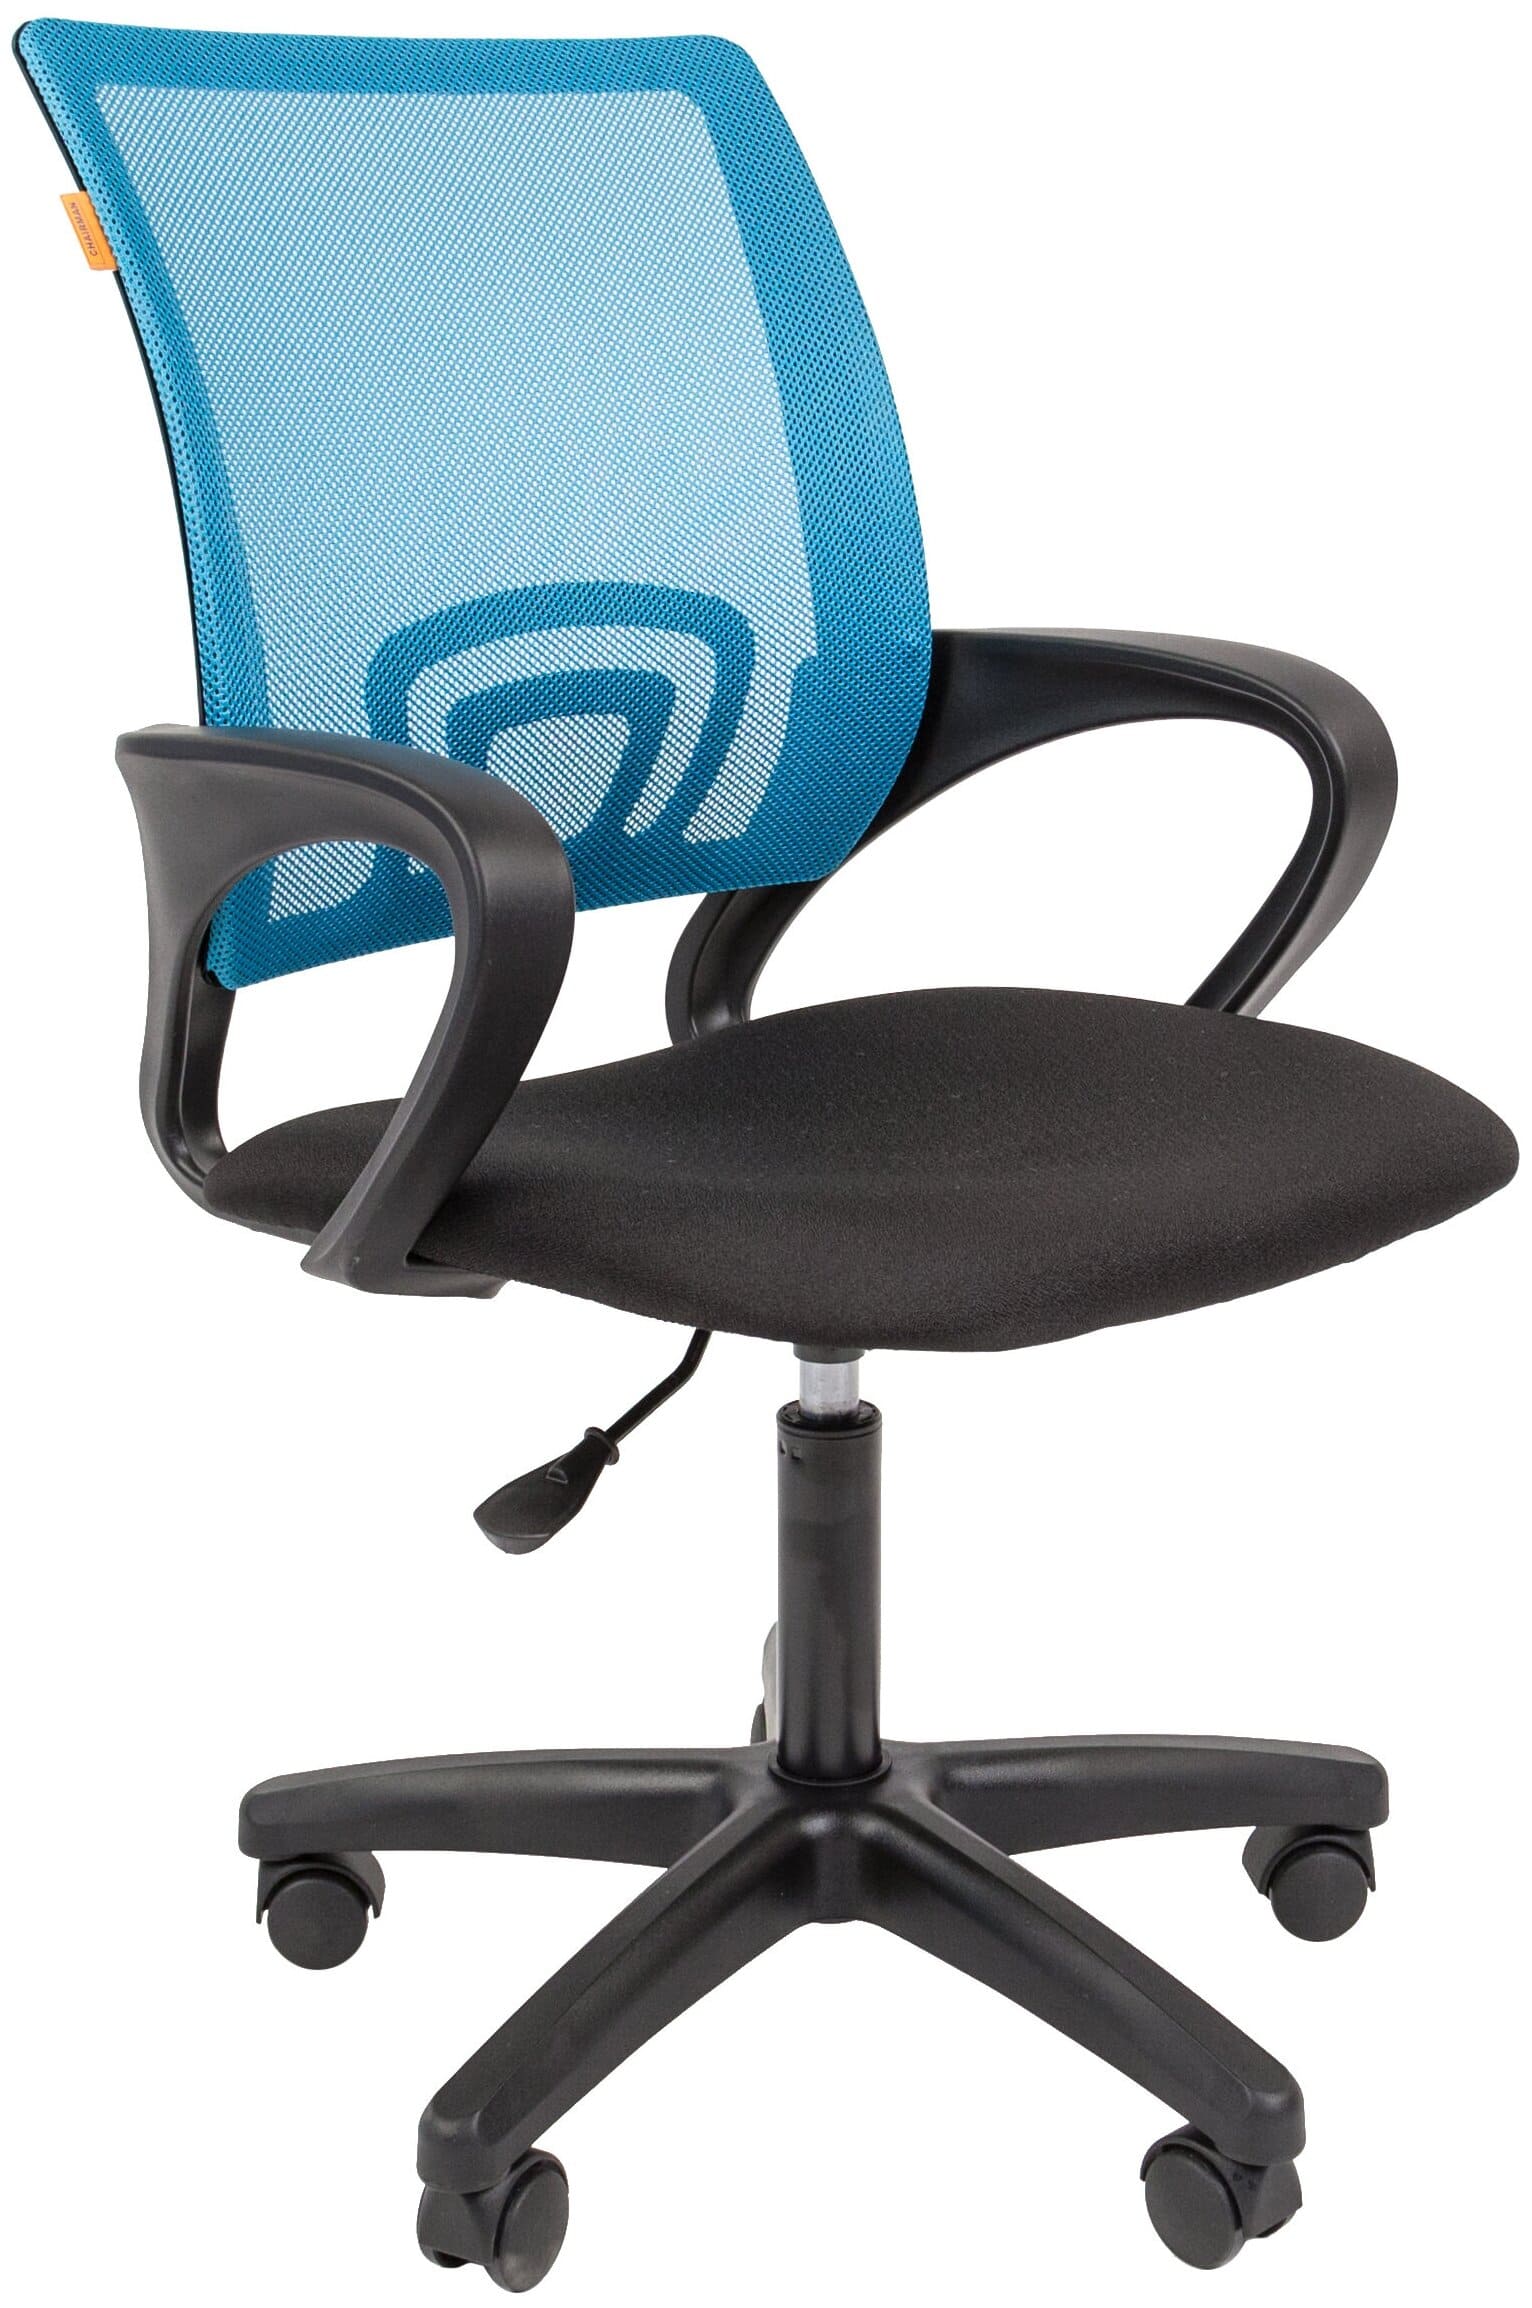 Кресло компьютерное Chairman 696 LT, голубой | Защита-Офис - интернет-магазин сейфов, кресел, металлической 